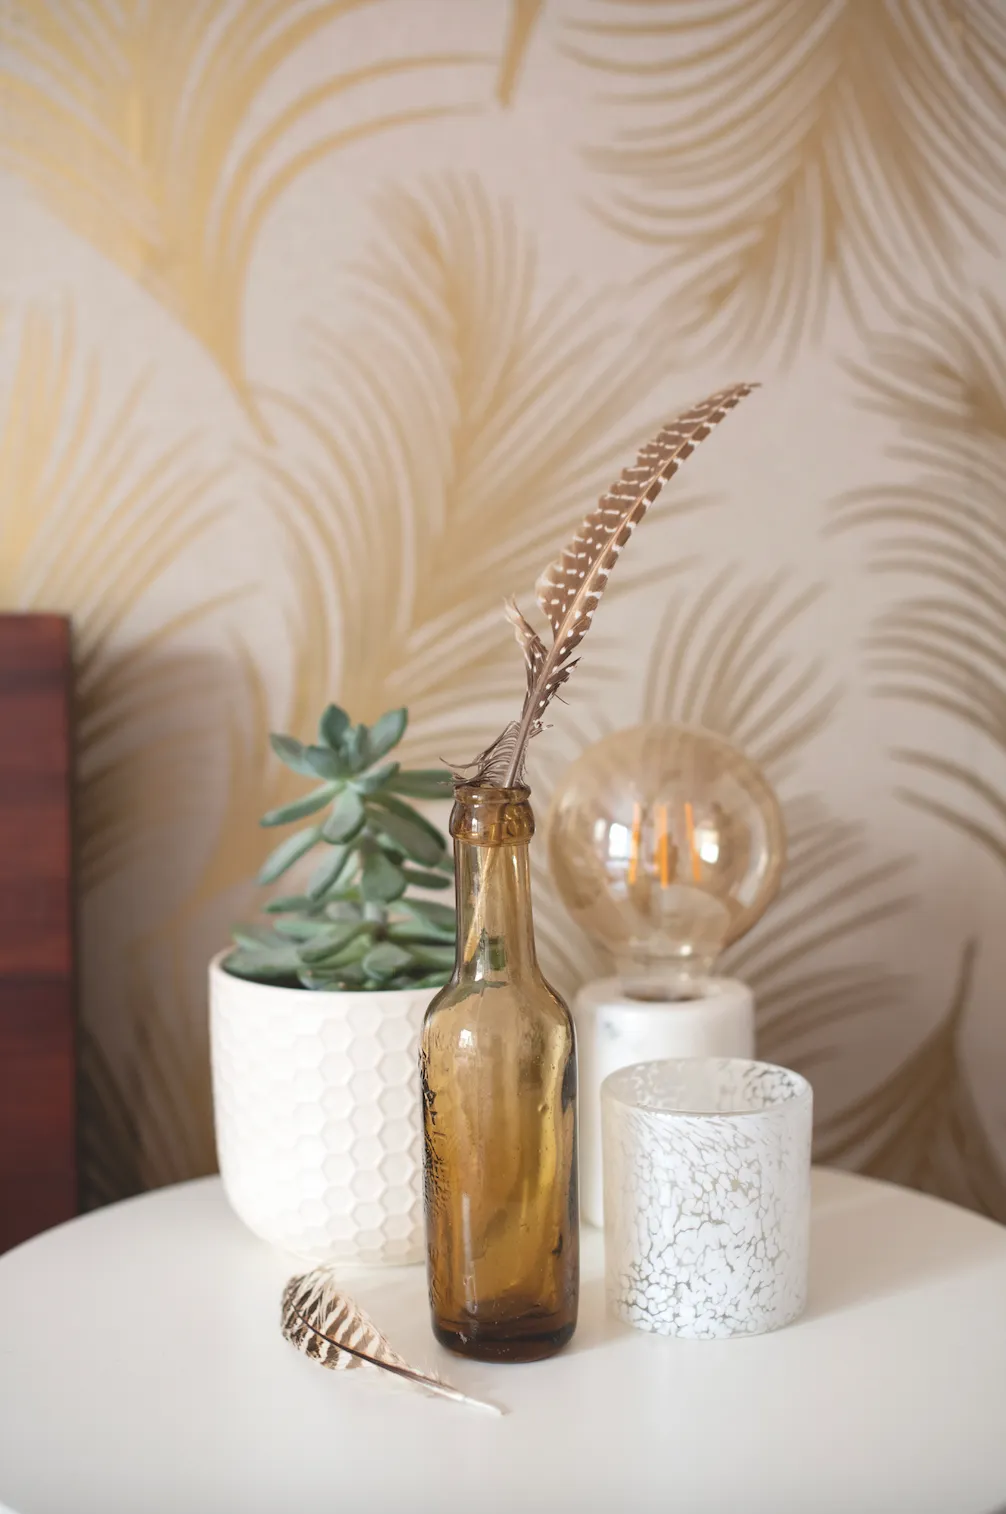 Real home - gold leaf motif wallpaper